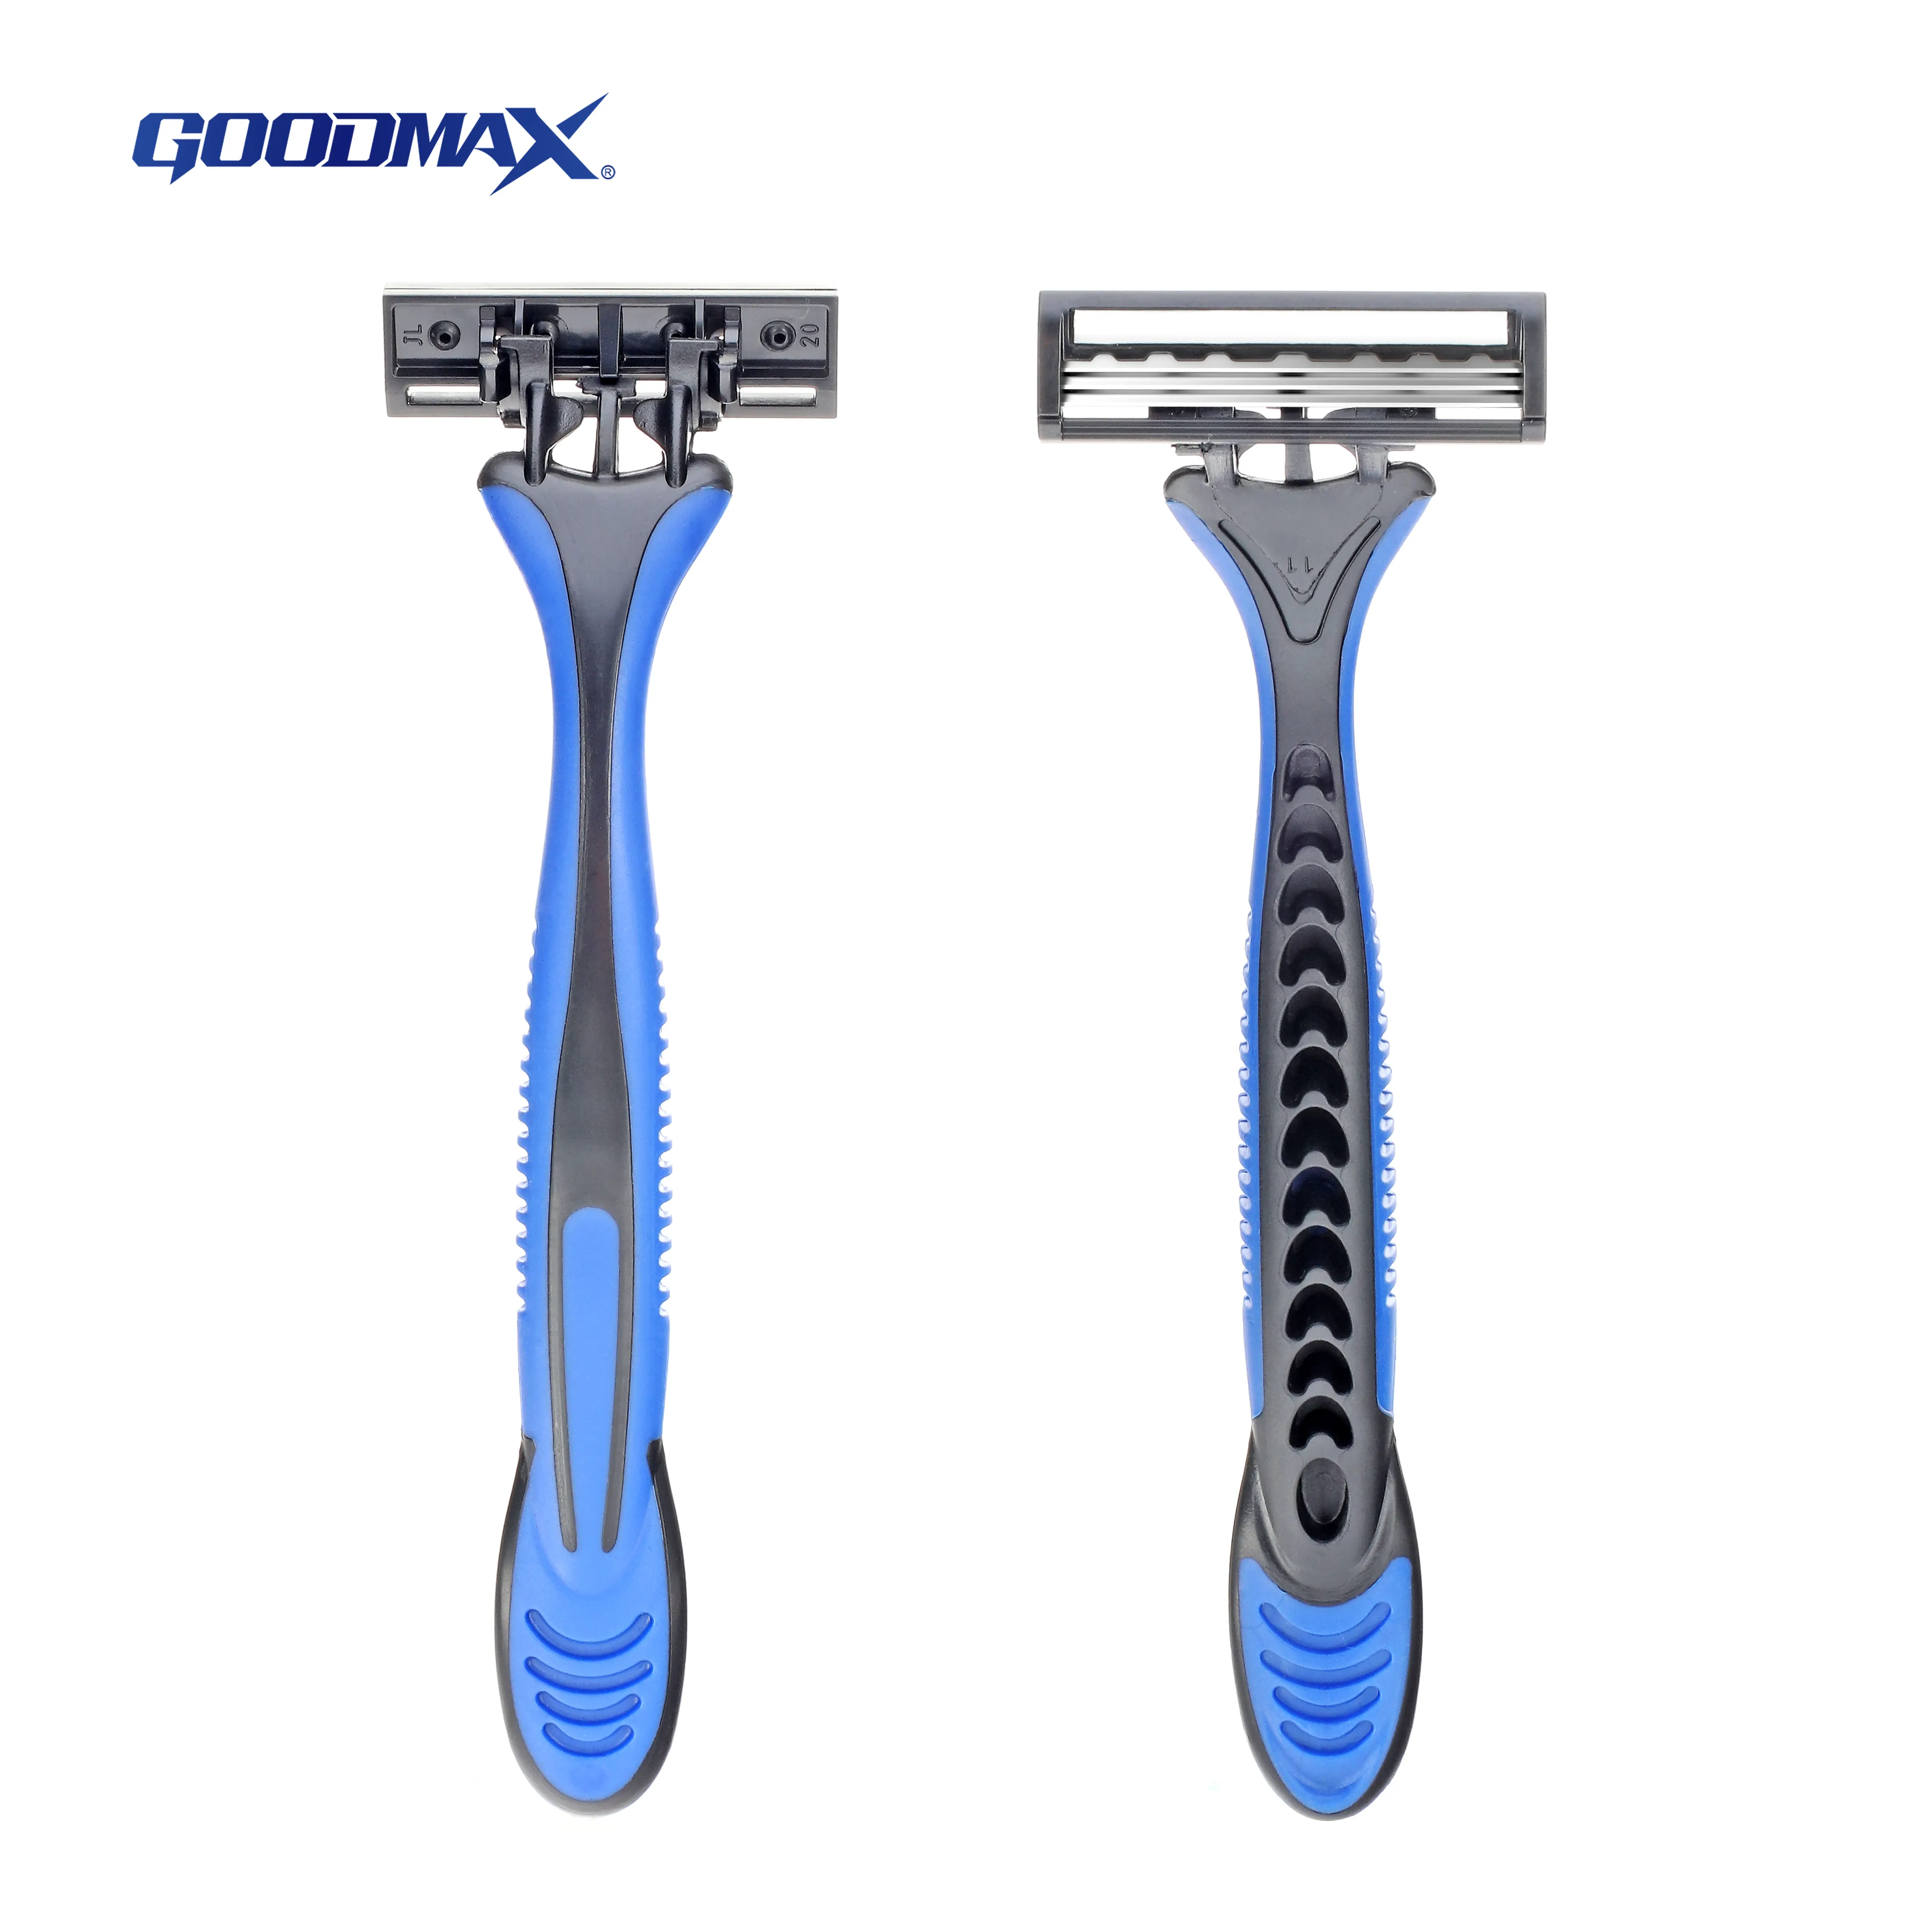 Goodmax lâmina de barbear descartável, para homens, de aço inoxidável, alta qualidade, para homens